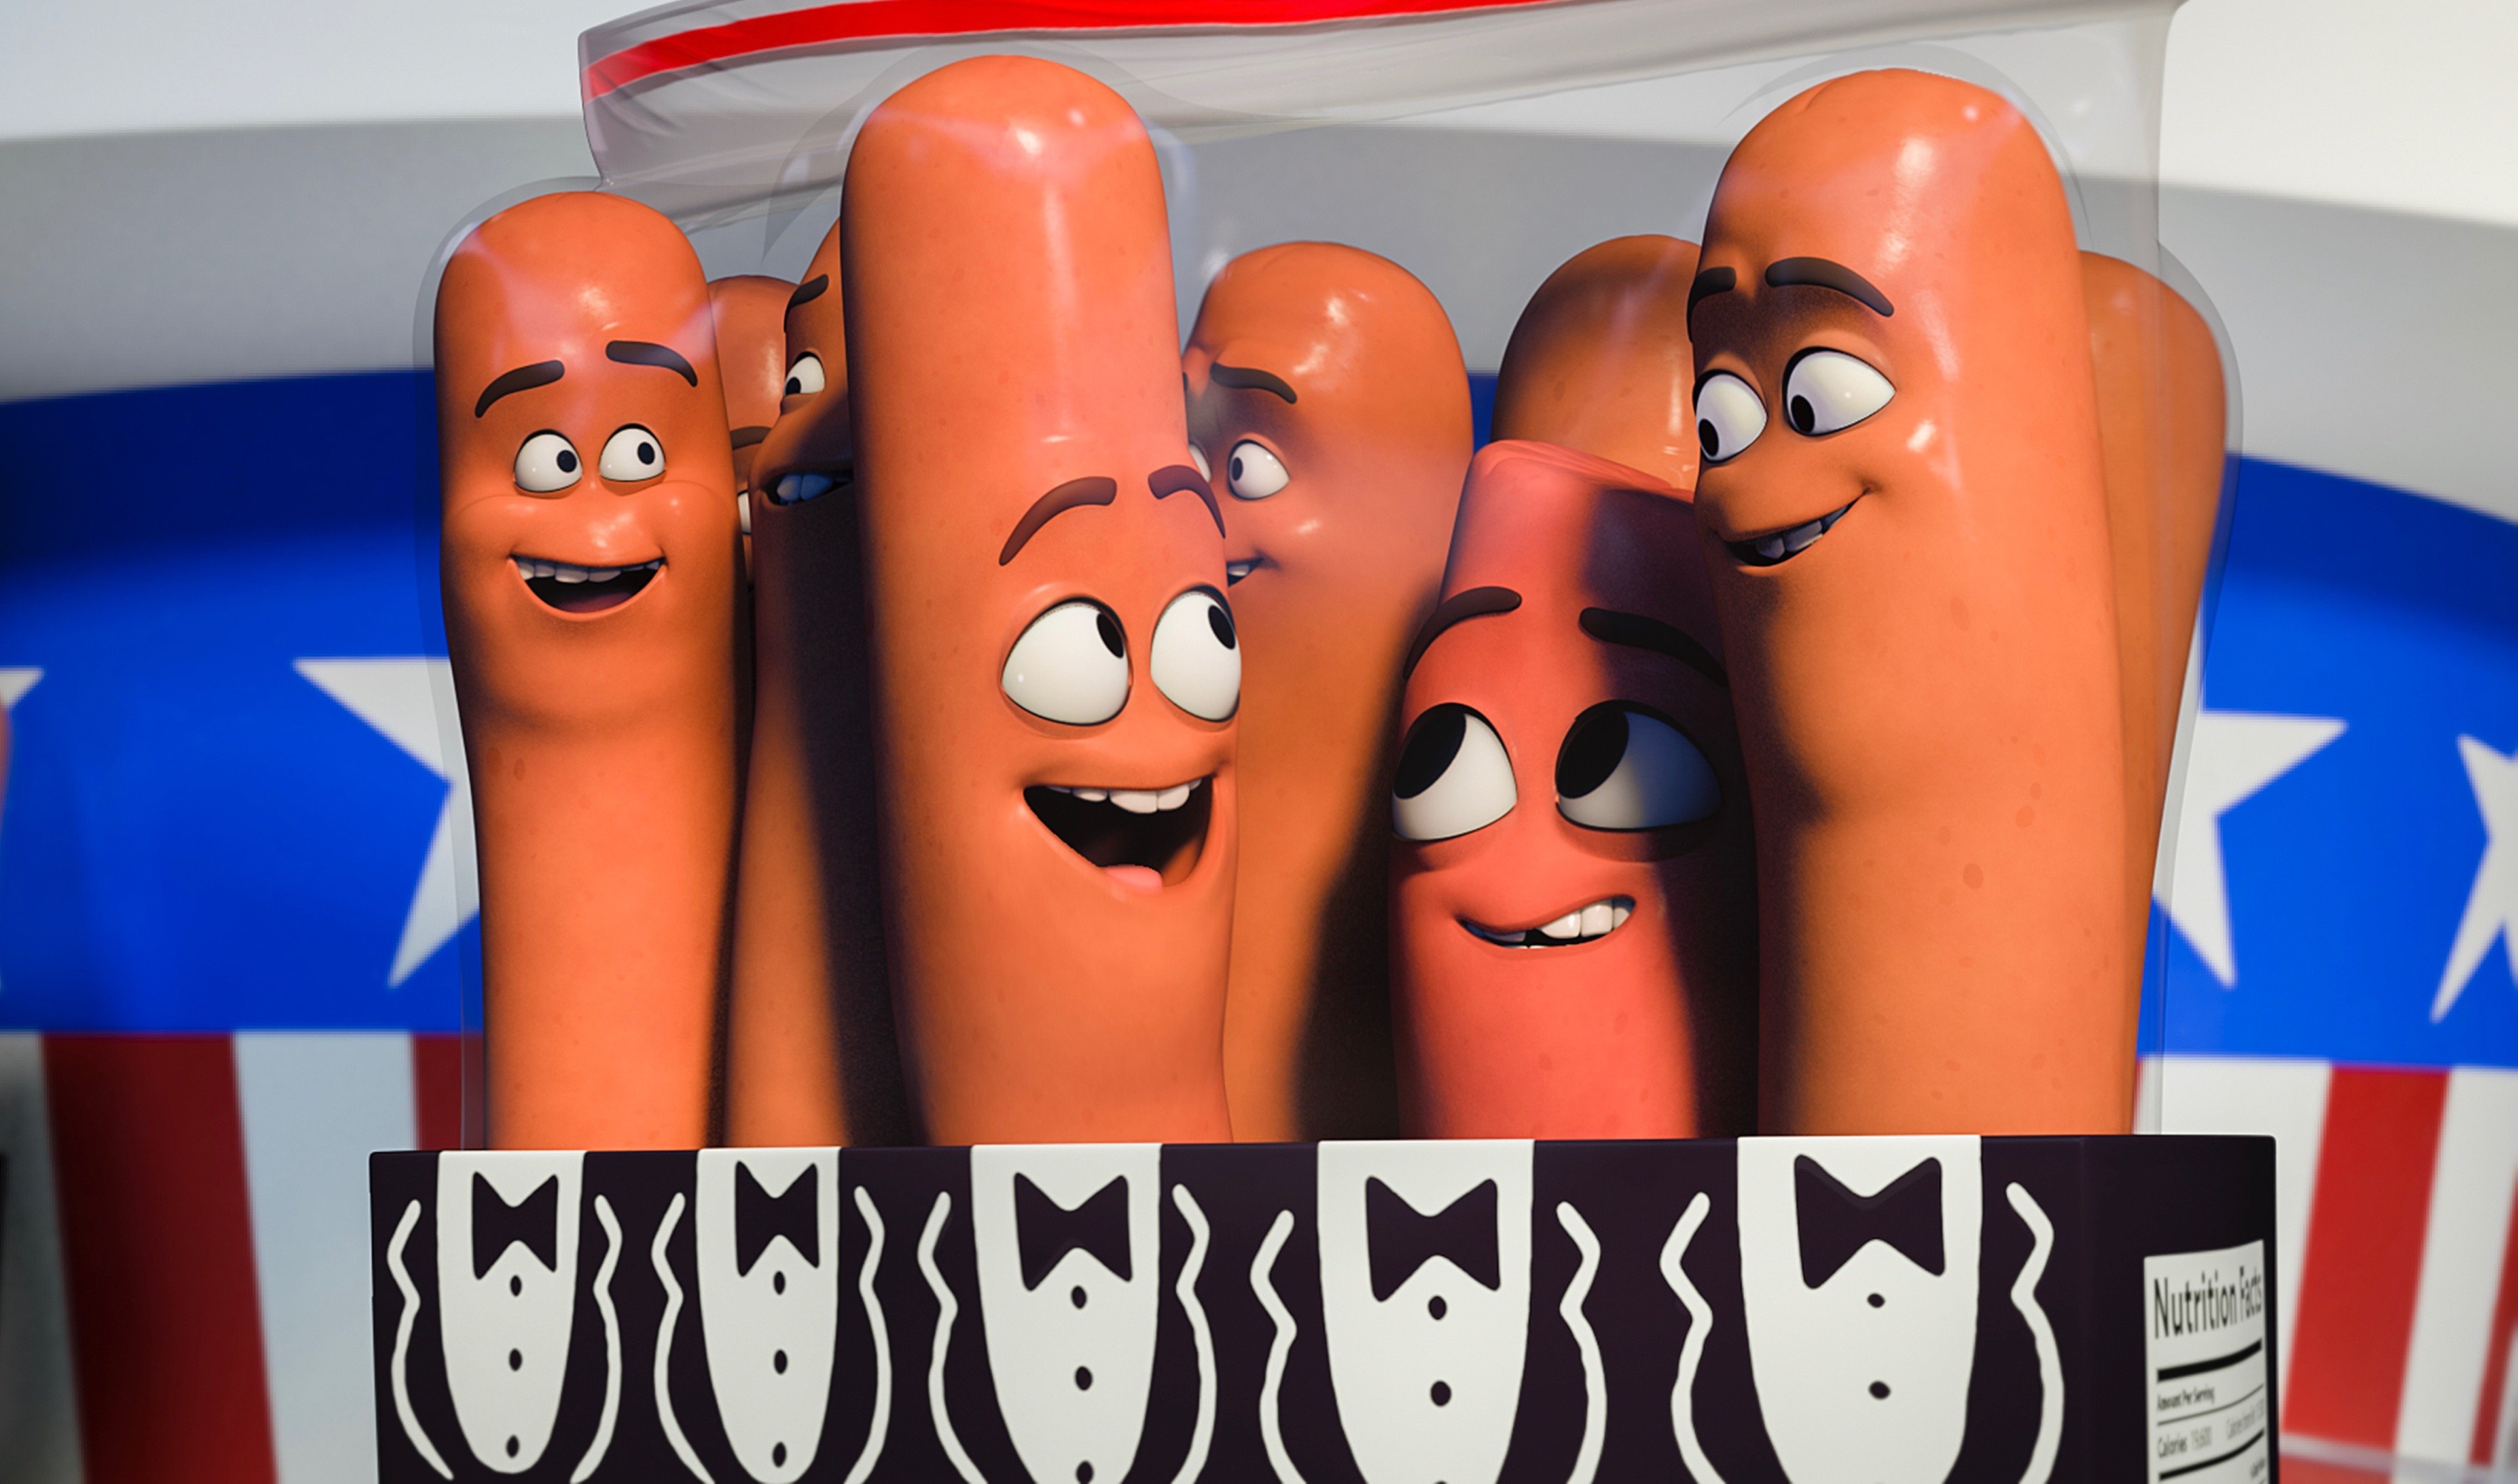 sausage party сосисочная вечеринка полный расколбас рейтинг 18+ только для взрослых комедия сет роген джеймс франко майкл сера комики мультяшный анимационный кино рецензии отвратительные мужики